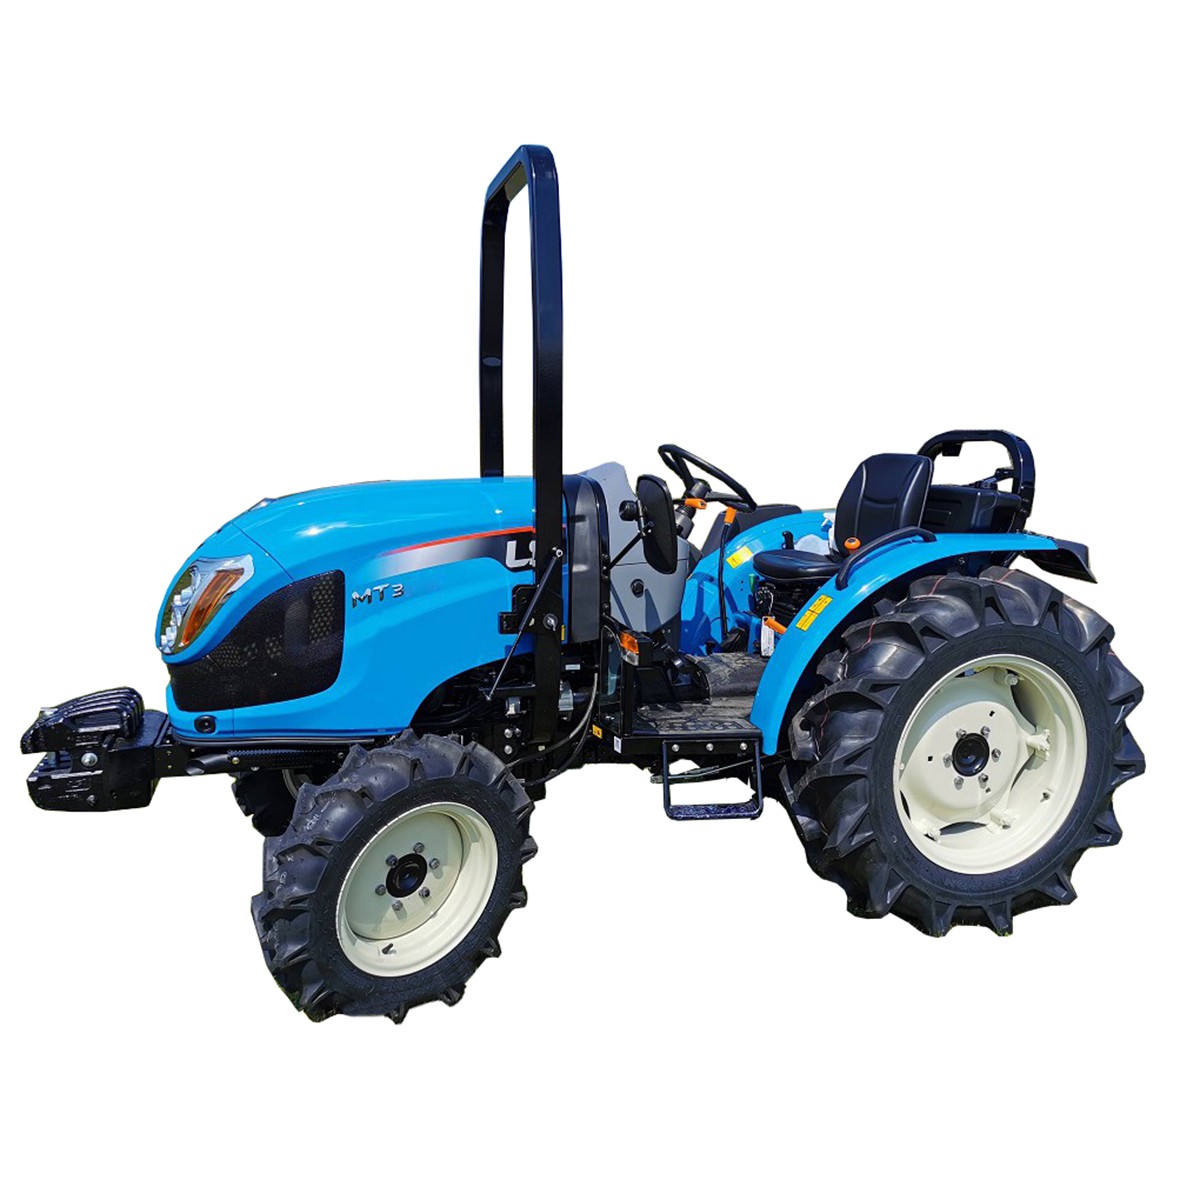 LS-Traktor MT3.60 MEC 4x4 - 57 PS